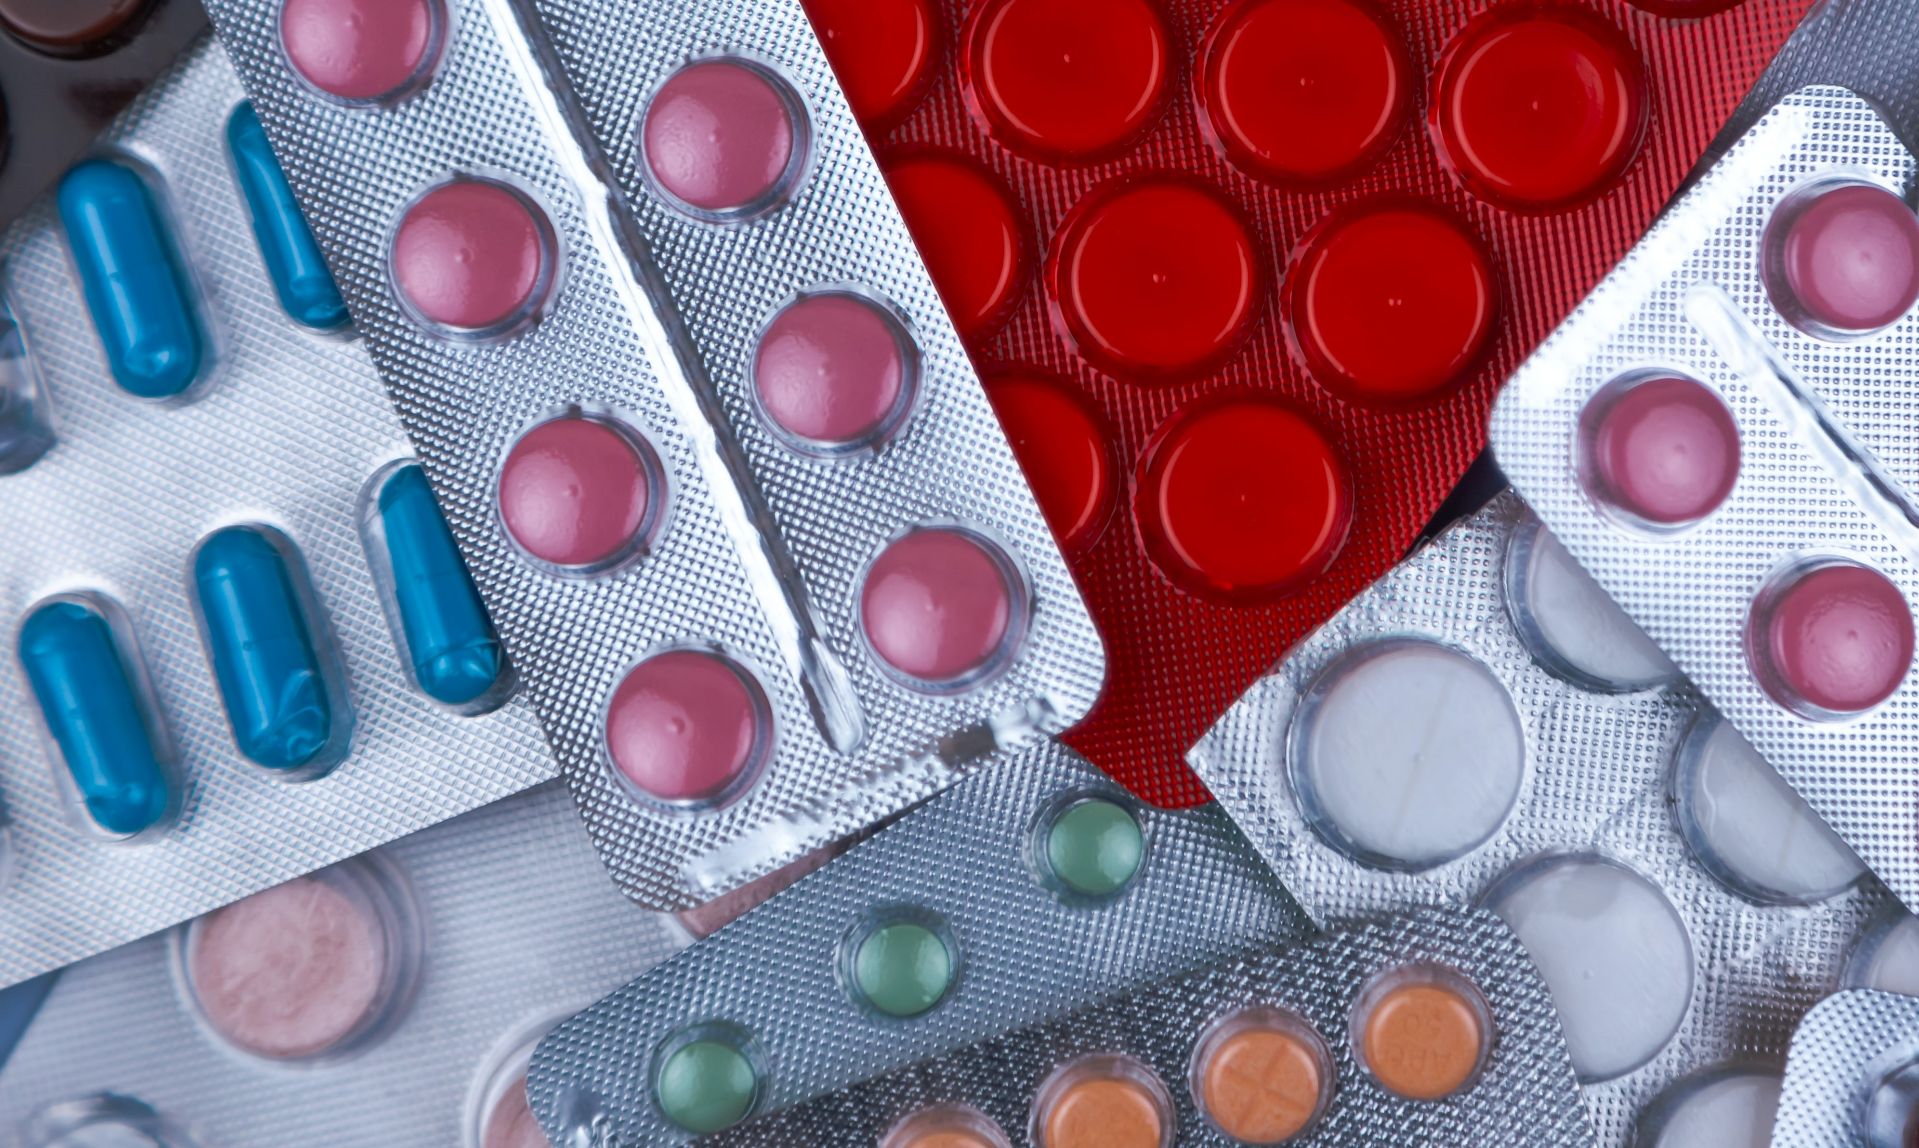  România implementează proiectul european CHESSMEN, privind gestionarea discontinuităţilor în aprovizionarea cu medicamente  